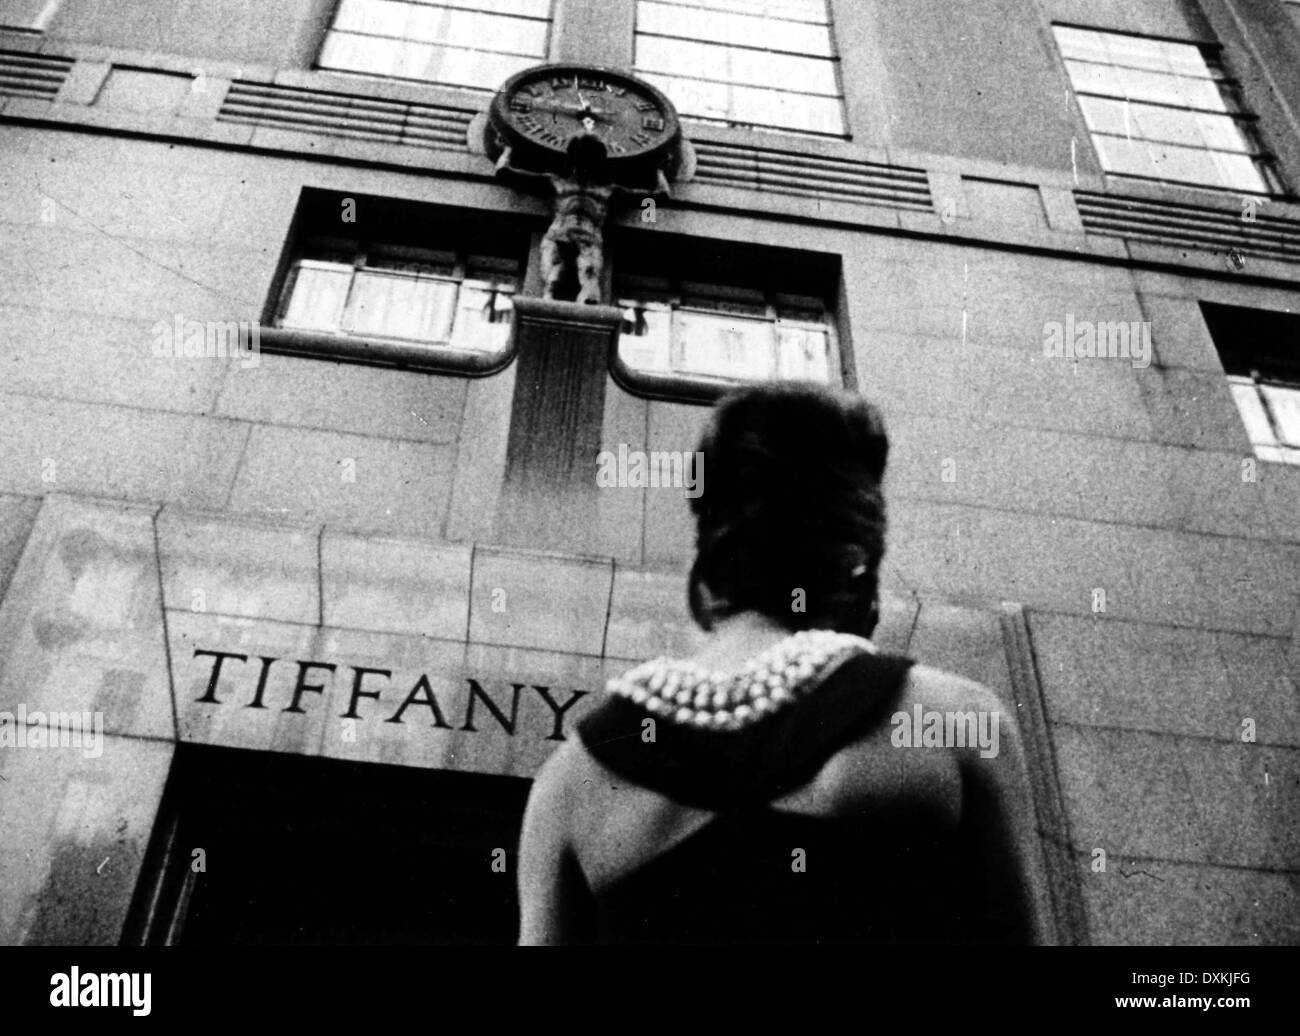 AUDREY HEPBURN, BREAKFAST AT TIFFANY'S, 1961 Stock Photo